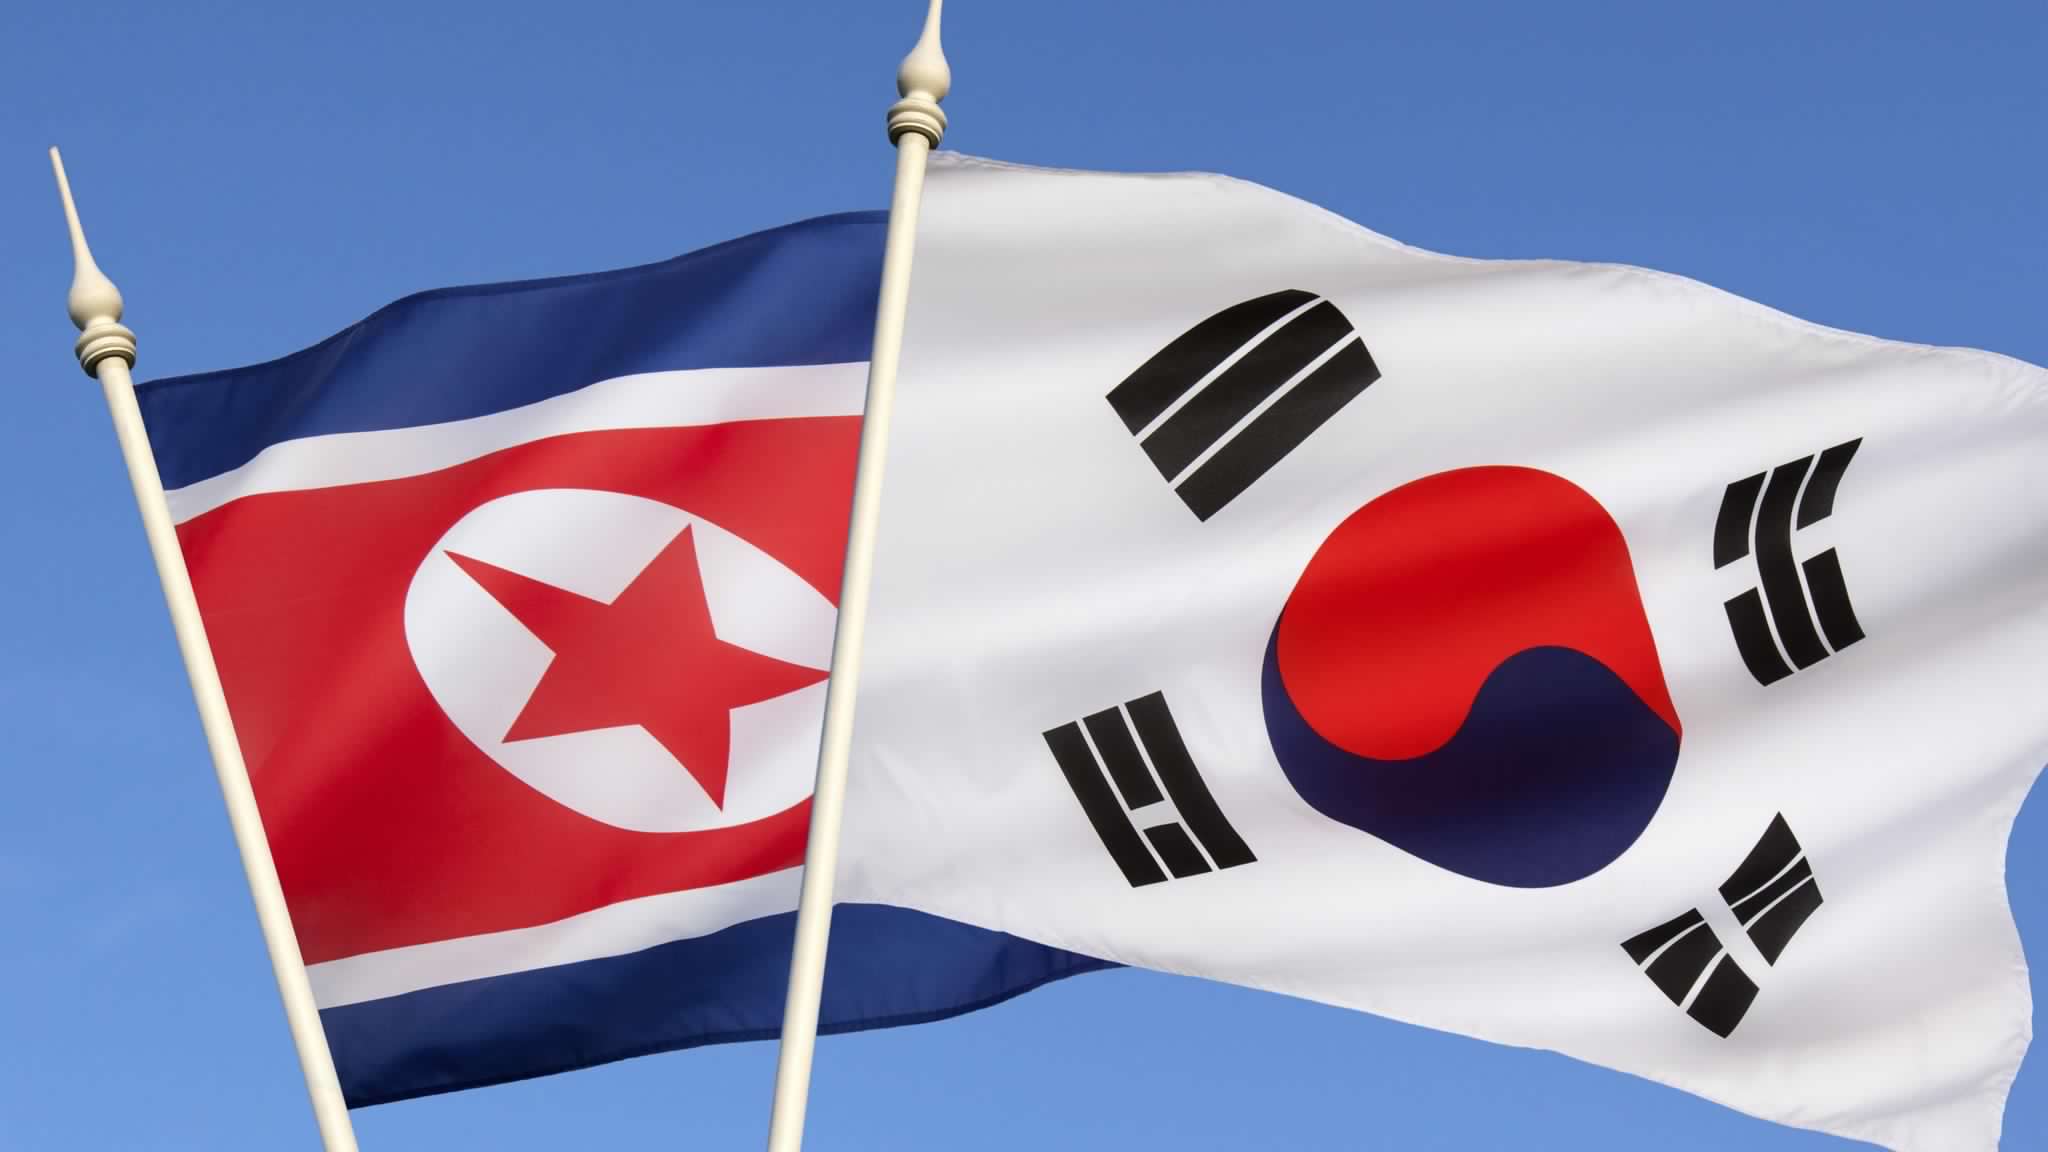 La storia della Corea: perché le due Coree sono divise?